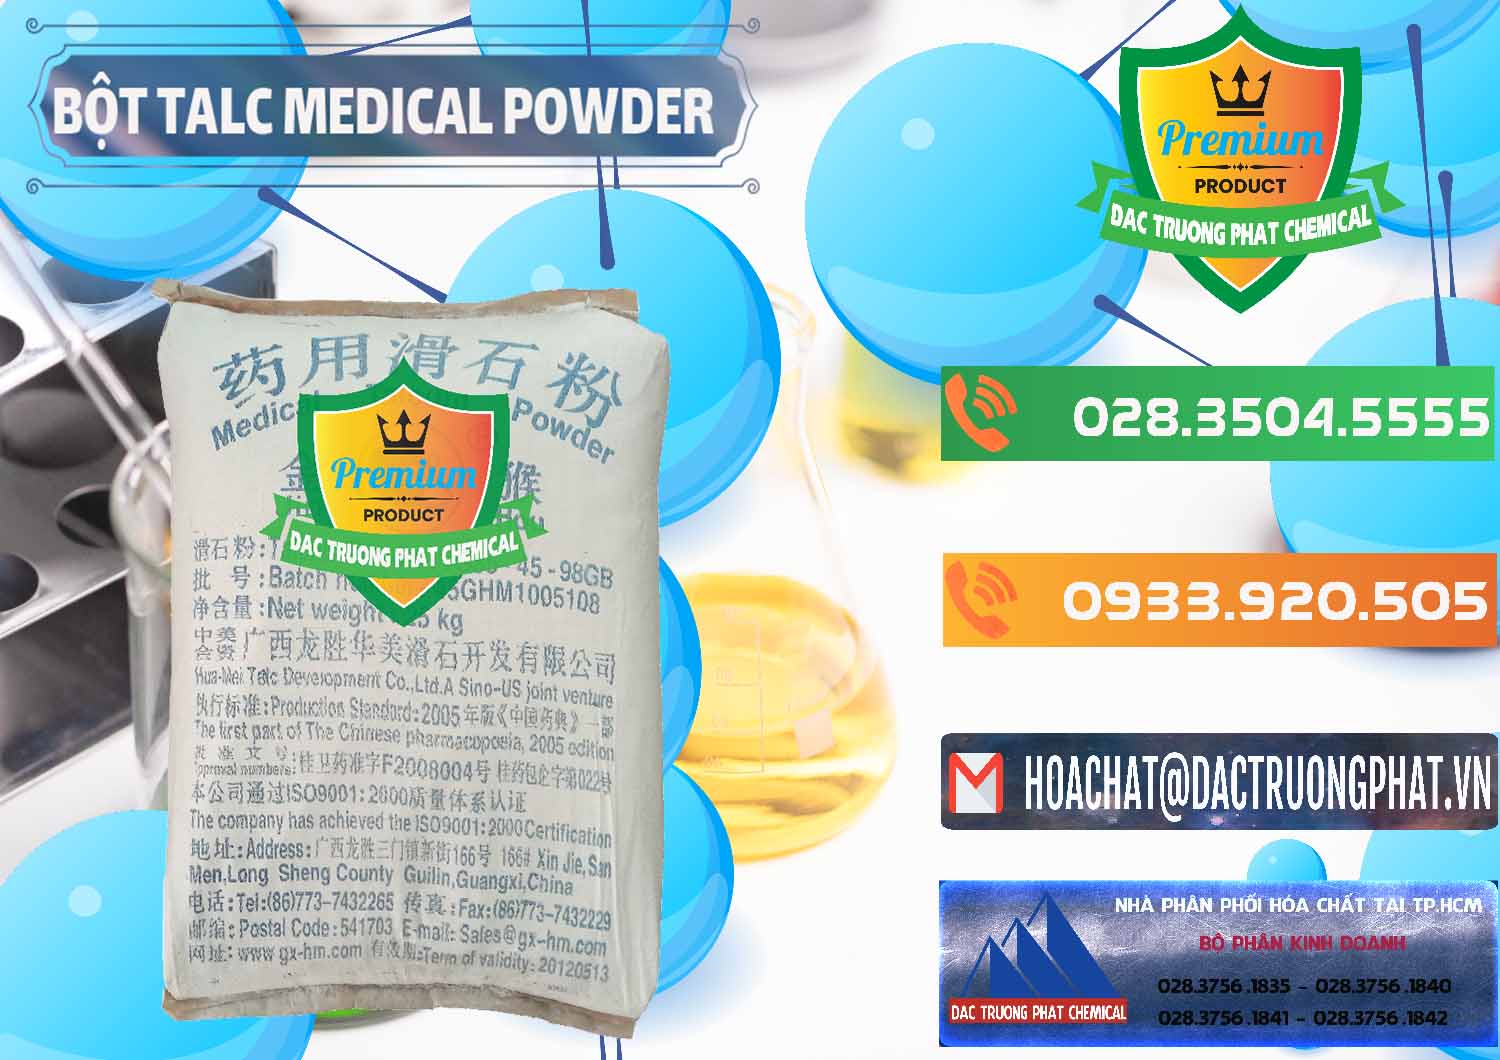 Cty chuyên bán - phân phối Bột Talc Medical Powder Trung Quốc China - 0036 - Công ty chuyên kinh doanh & phân phối hóa chất tại TP.HCM - hoachatxulynuoc.com.vn